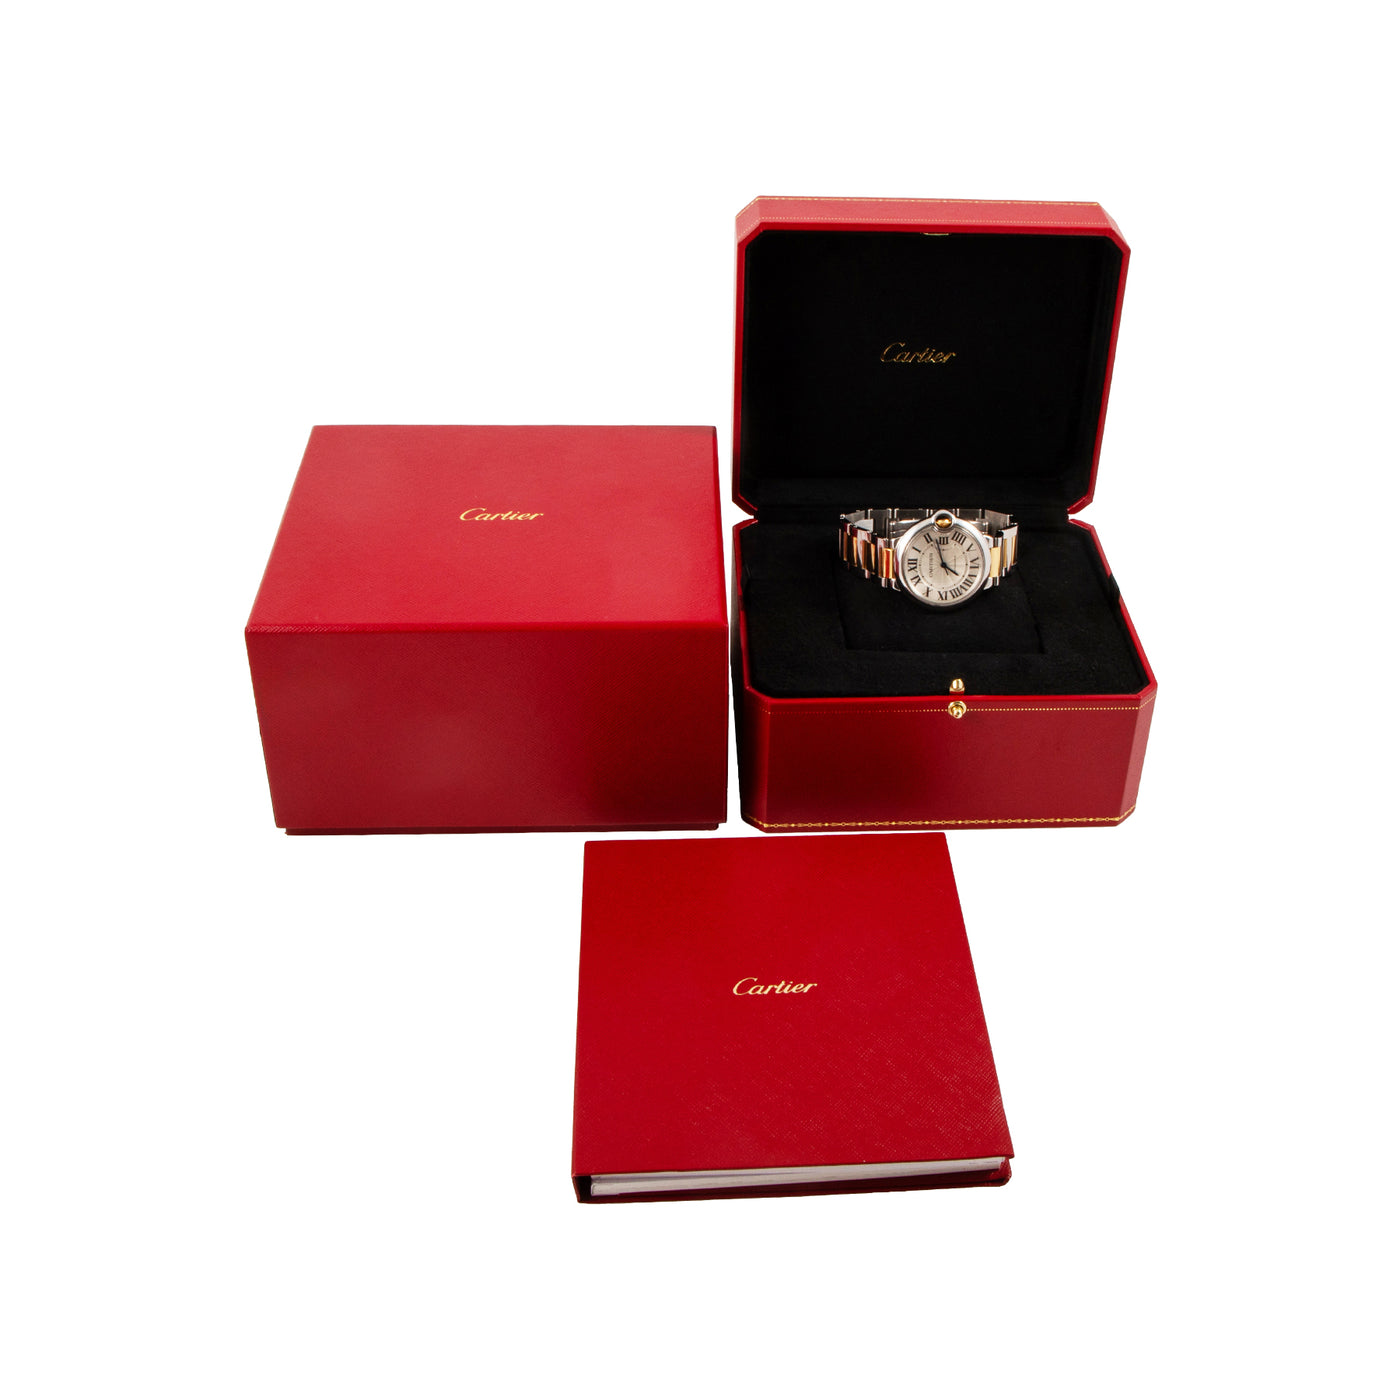 Cartier Ballon Bleu 3284 full set | Timepiece360